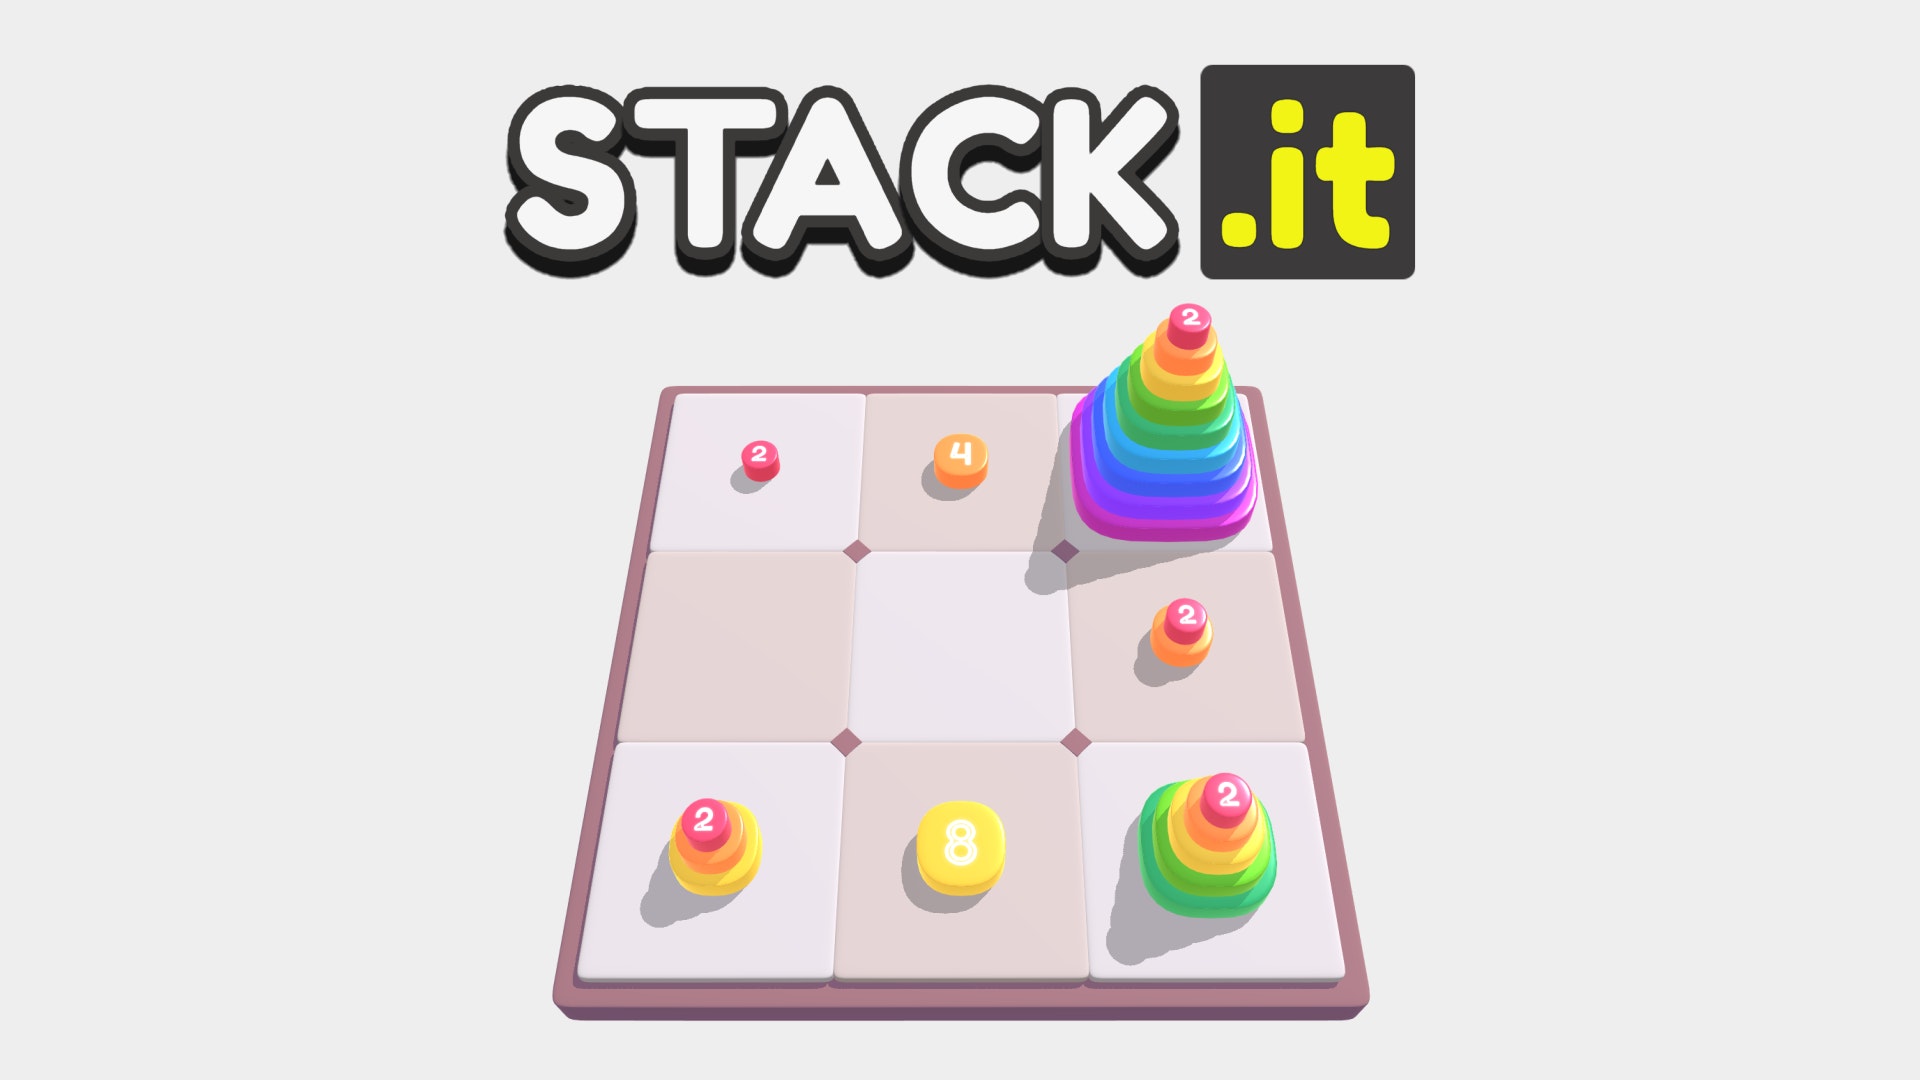 Box Stack - Free Play & No Download